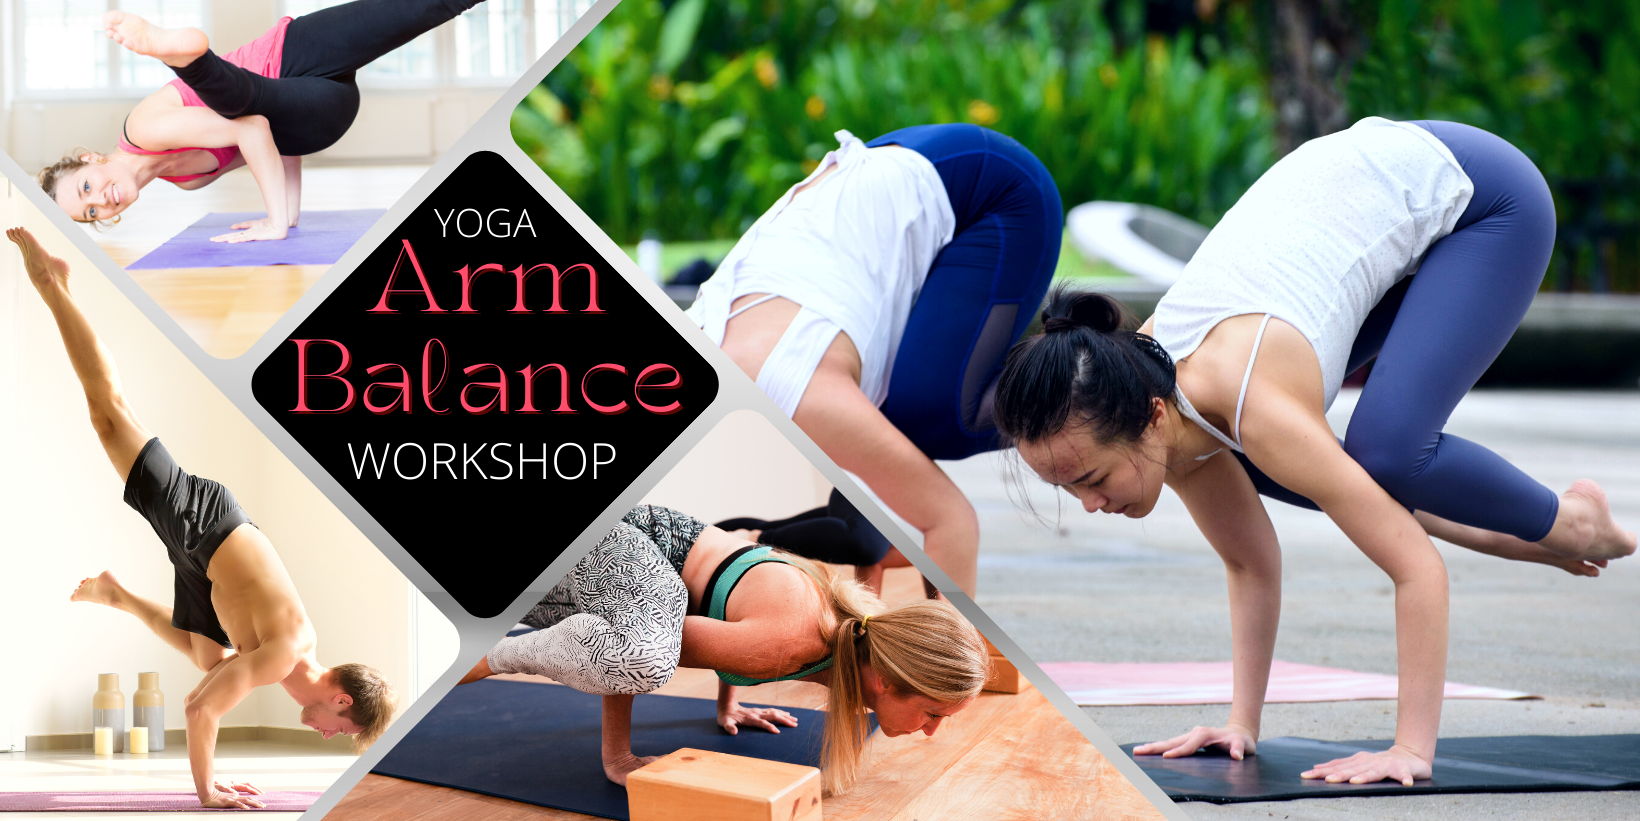 Yoga Arm Balance Workshop promotional image